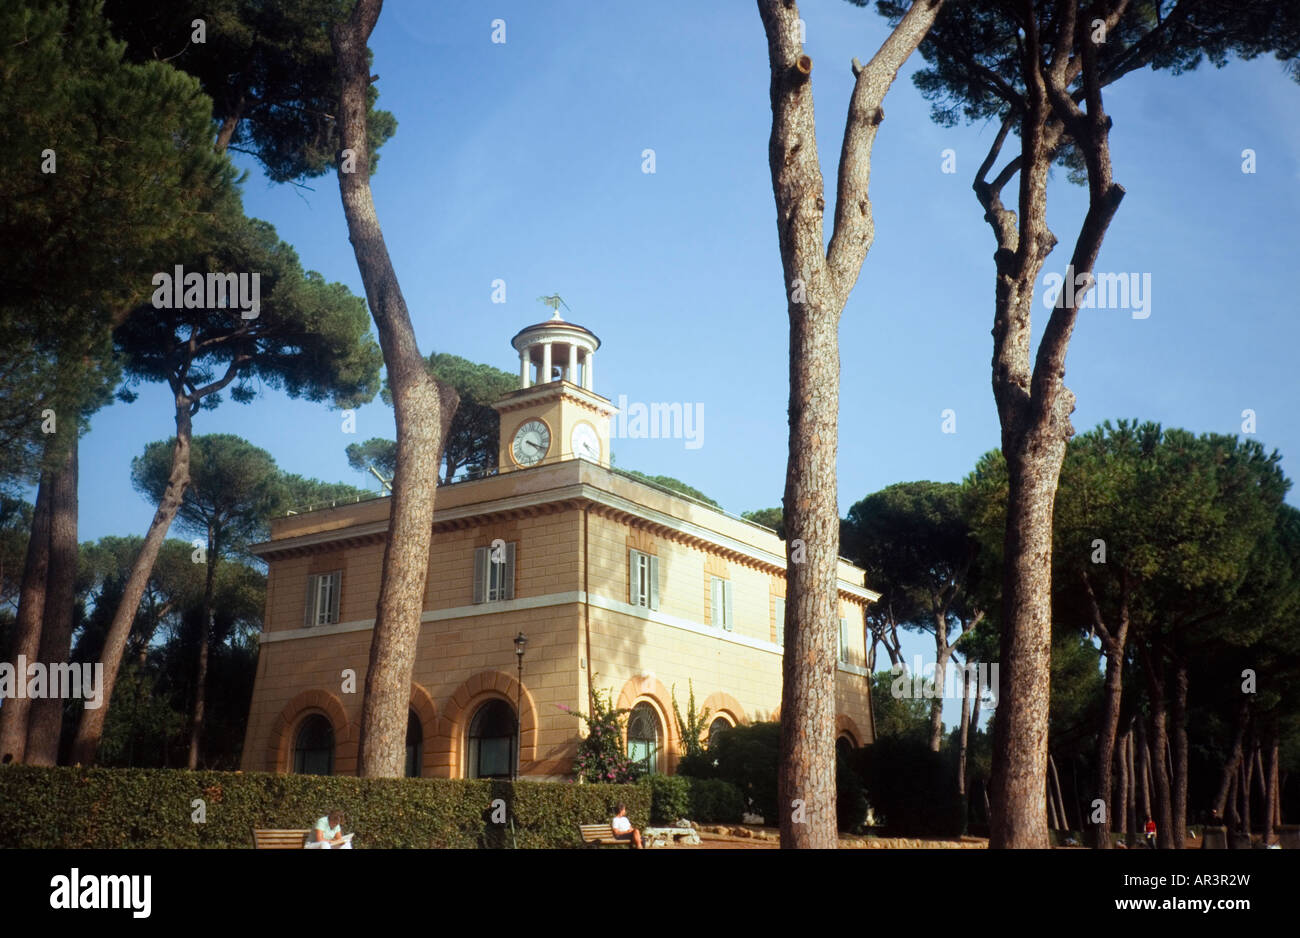 Casino dell'Orologio in Villa Borghese, Rome Stock Photo - Alamy